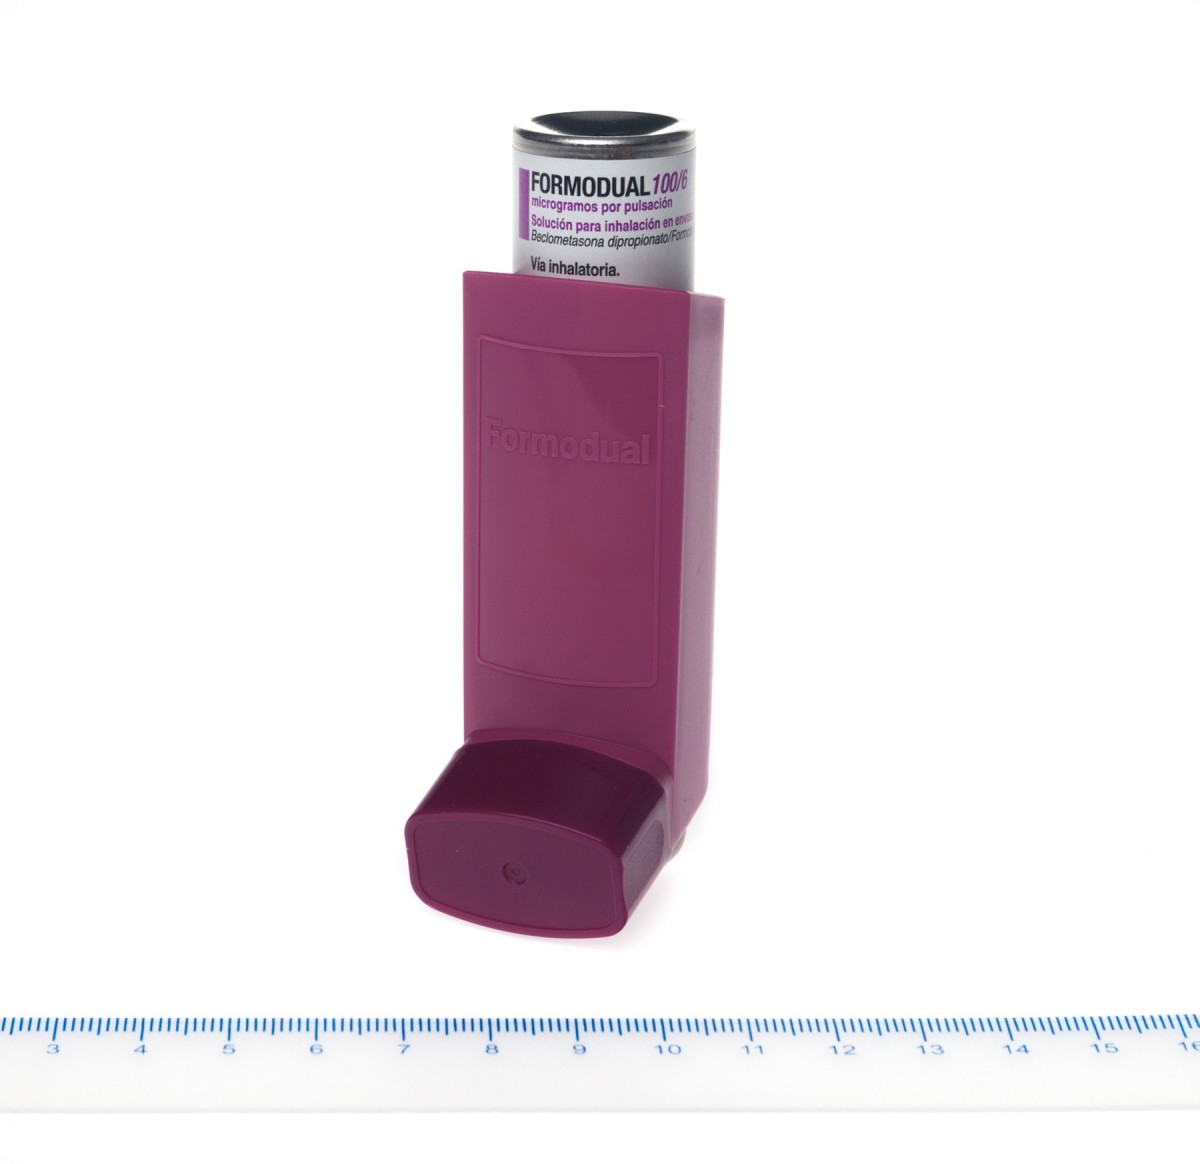 FORMODUAL 100/6 microgramos/PULSACION SOLUCION PARA INHALACION EN ENVASE A PRESION 1 inhalador de 120 dosis fotografía de la forma farmacéutica.